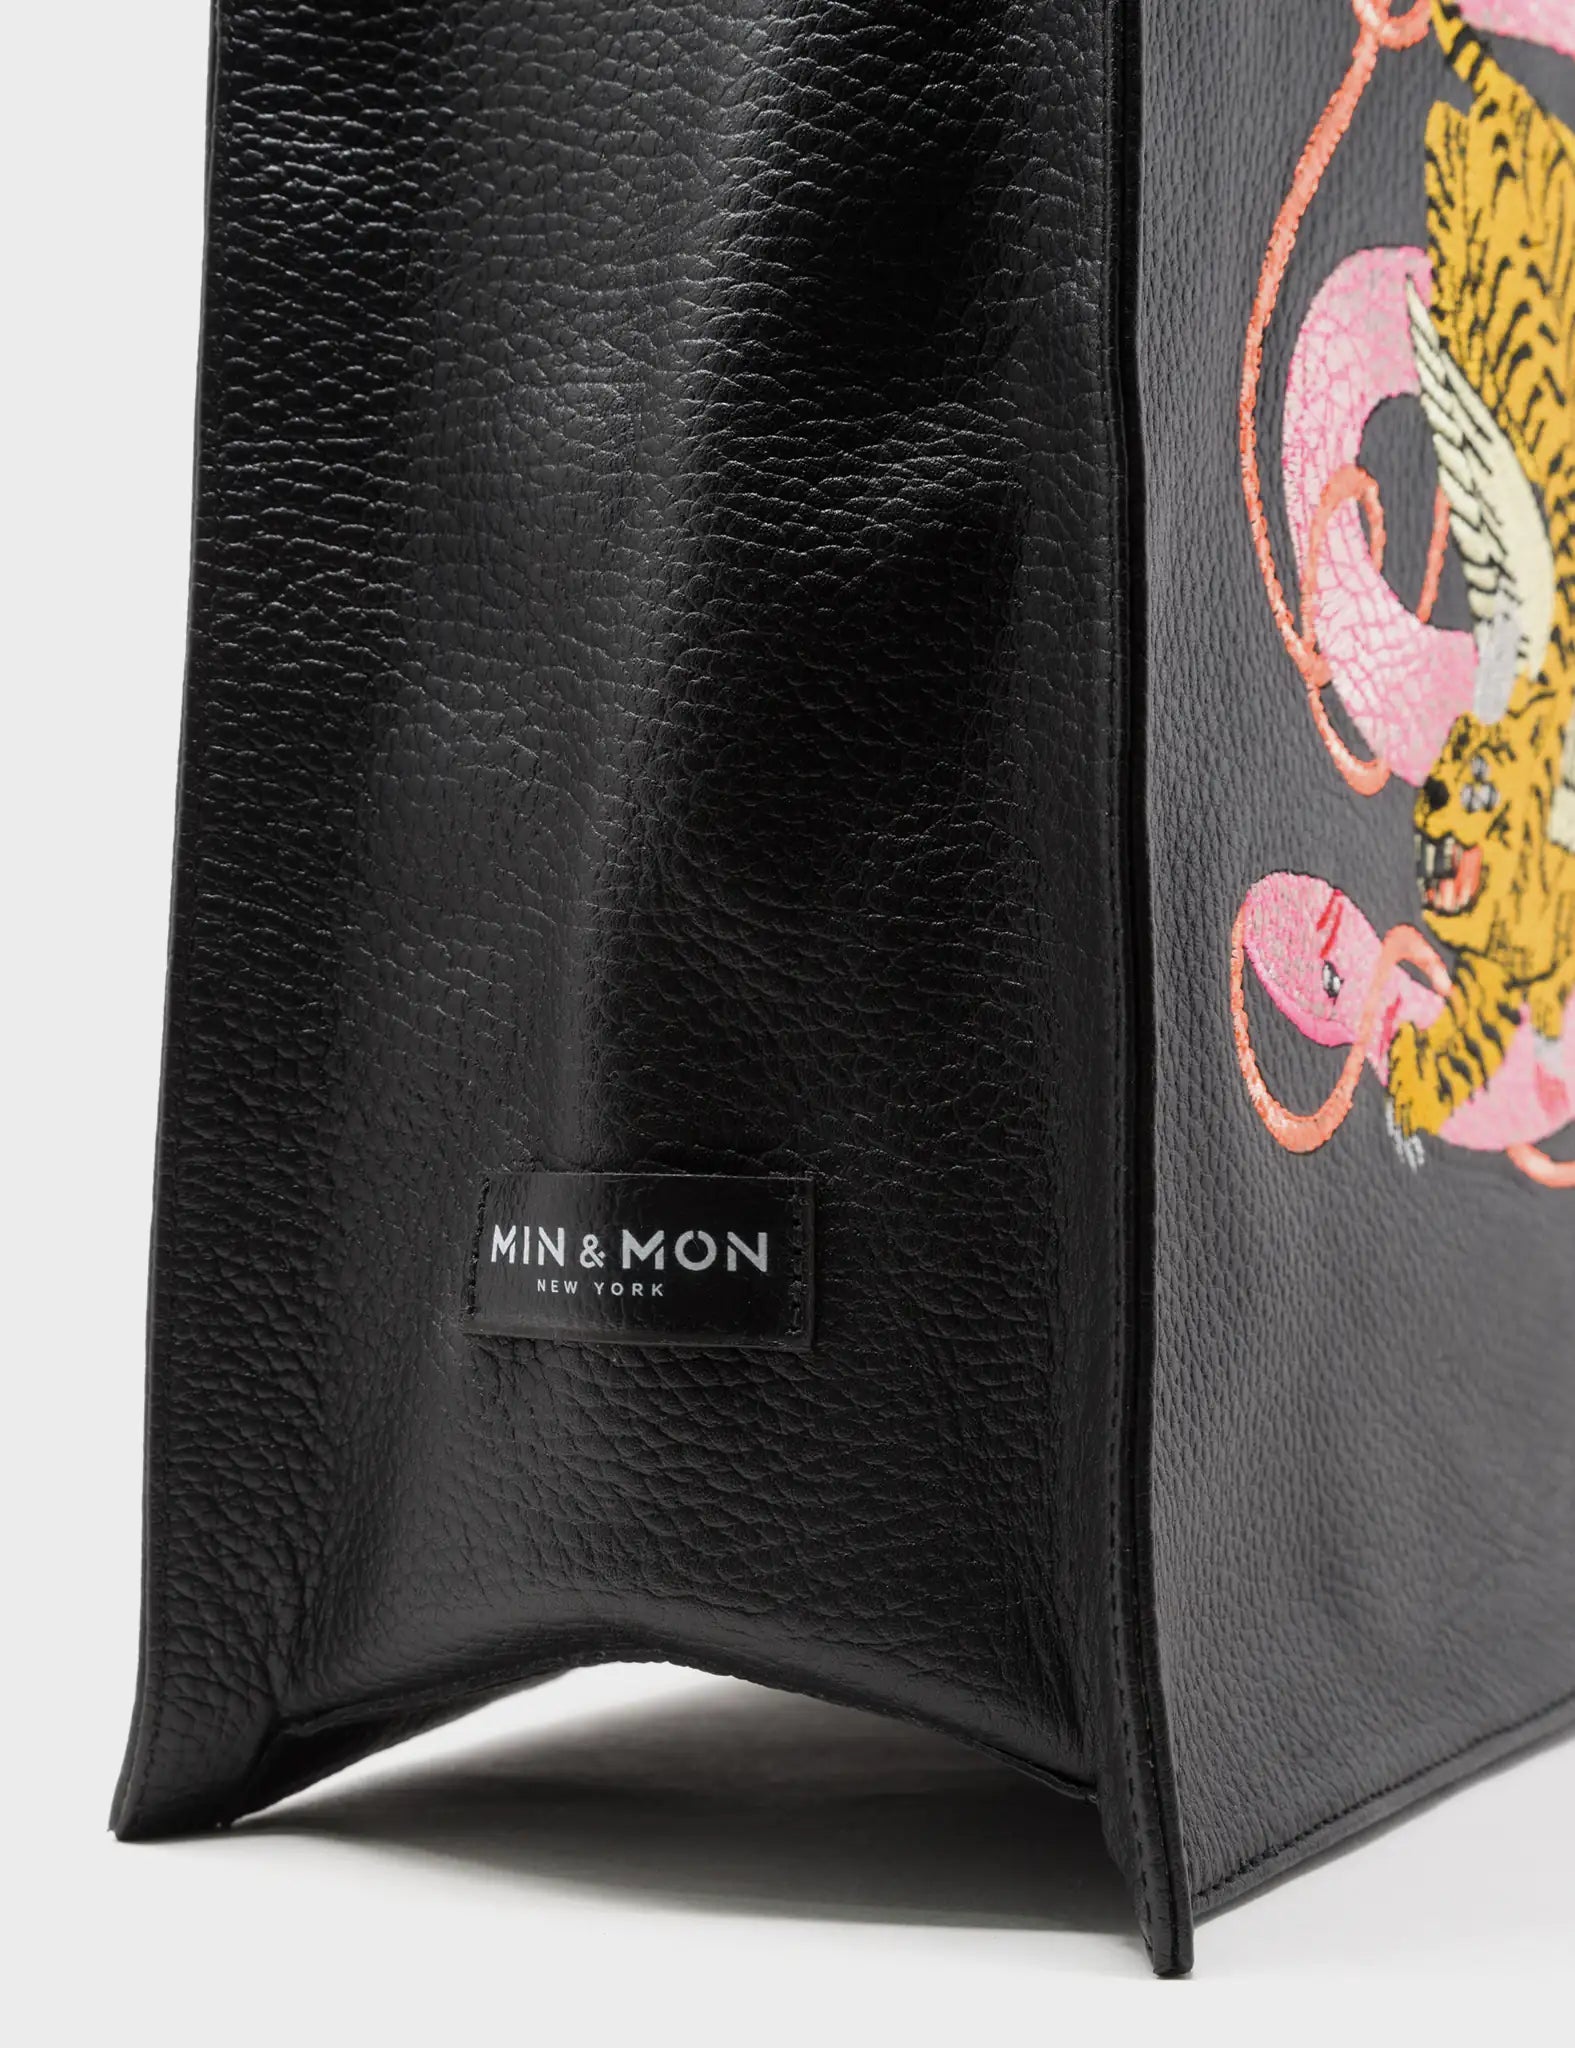 Black Leather Tote Bag - Tangled Tiger & Snake Print Original Design - Side